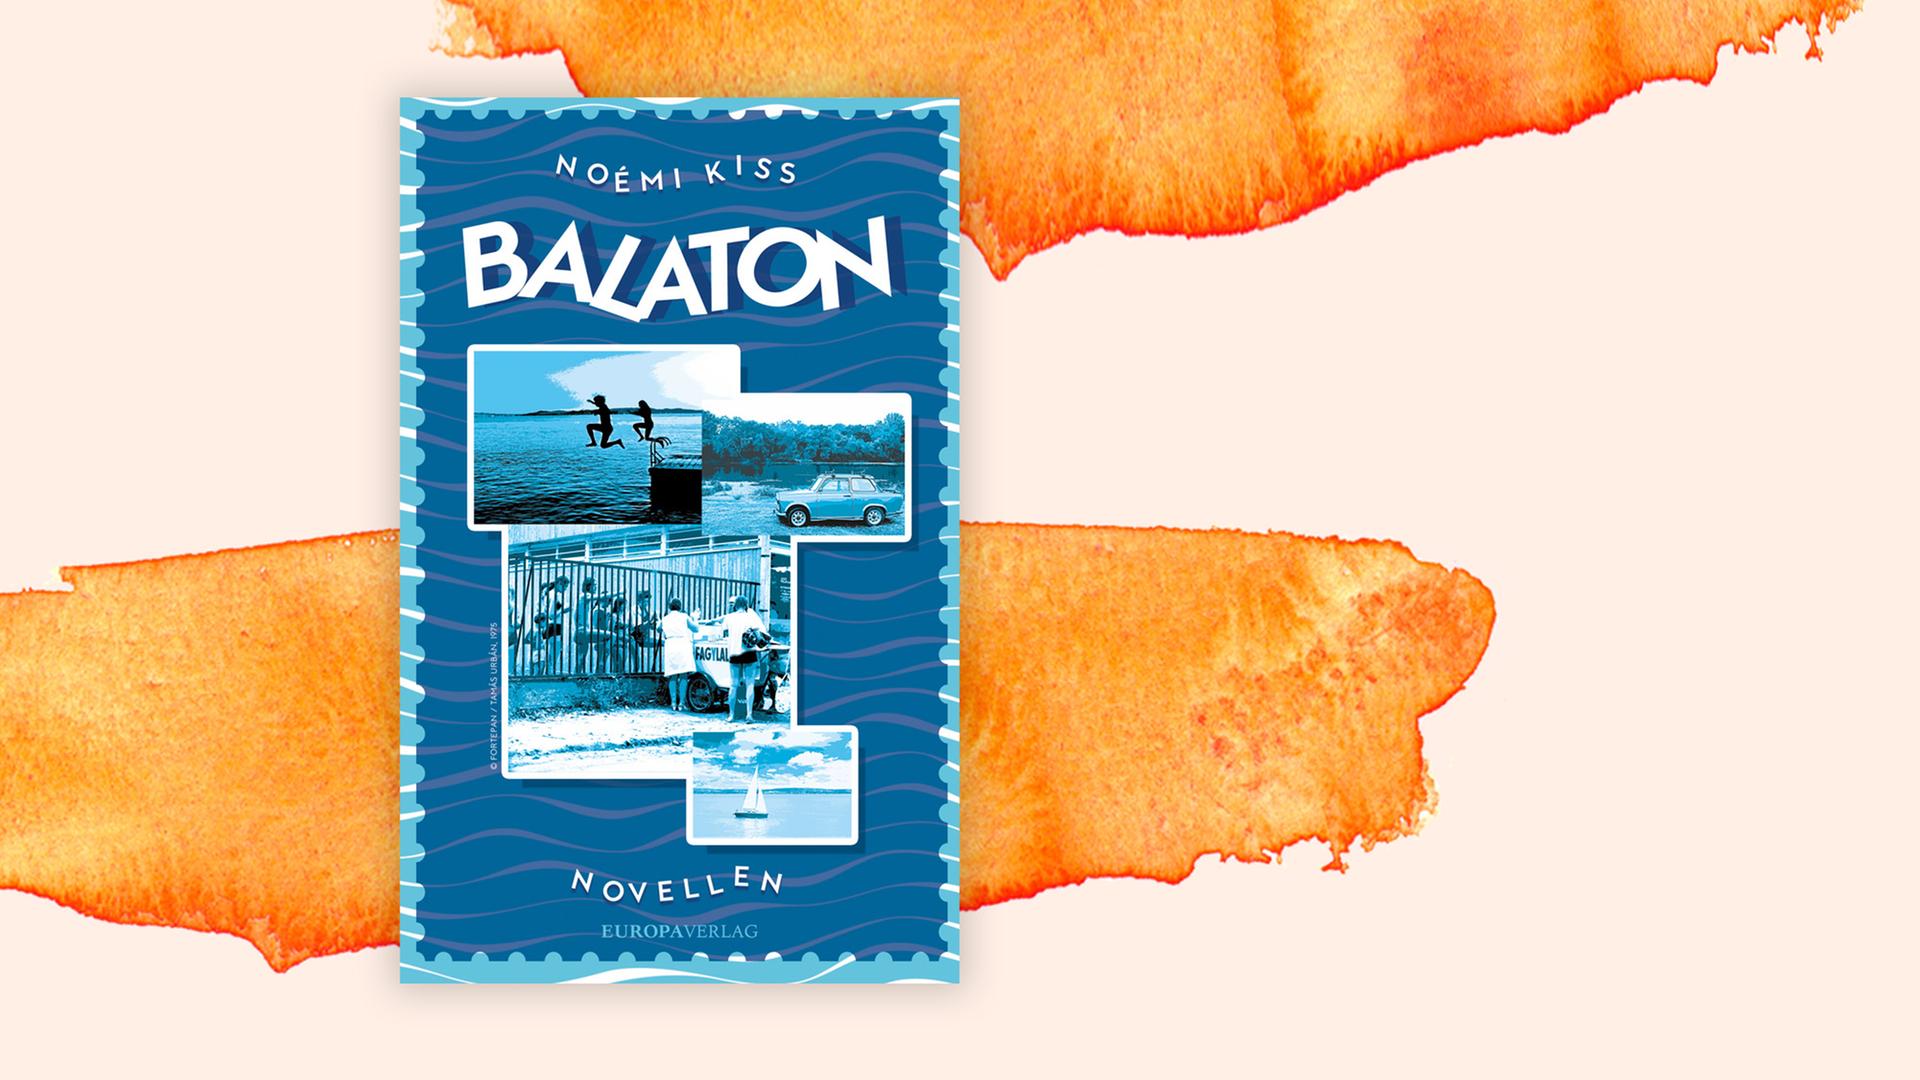 Das Cover des Buches von Noemi Kiss, "Balaton", auf orange-weißem Hintergrund.